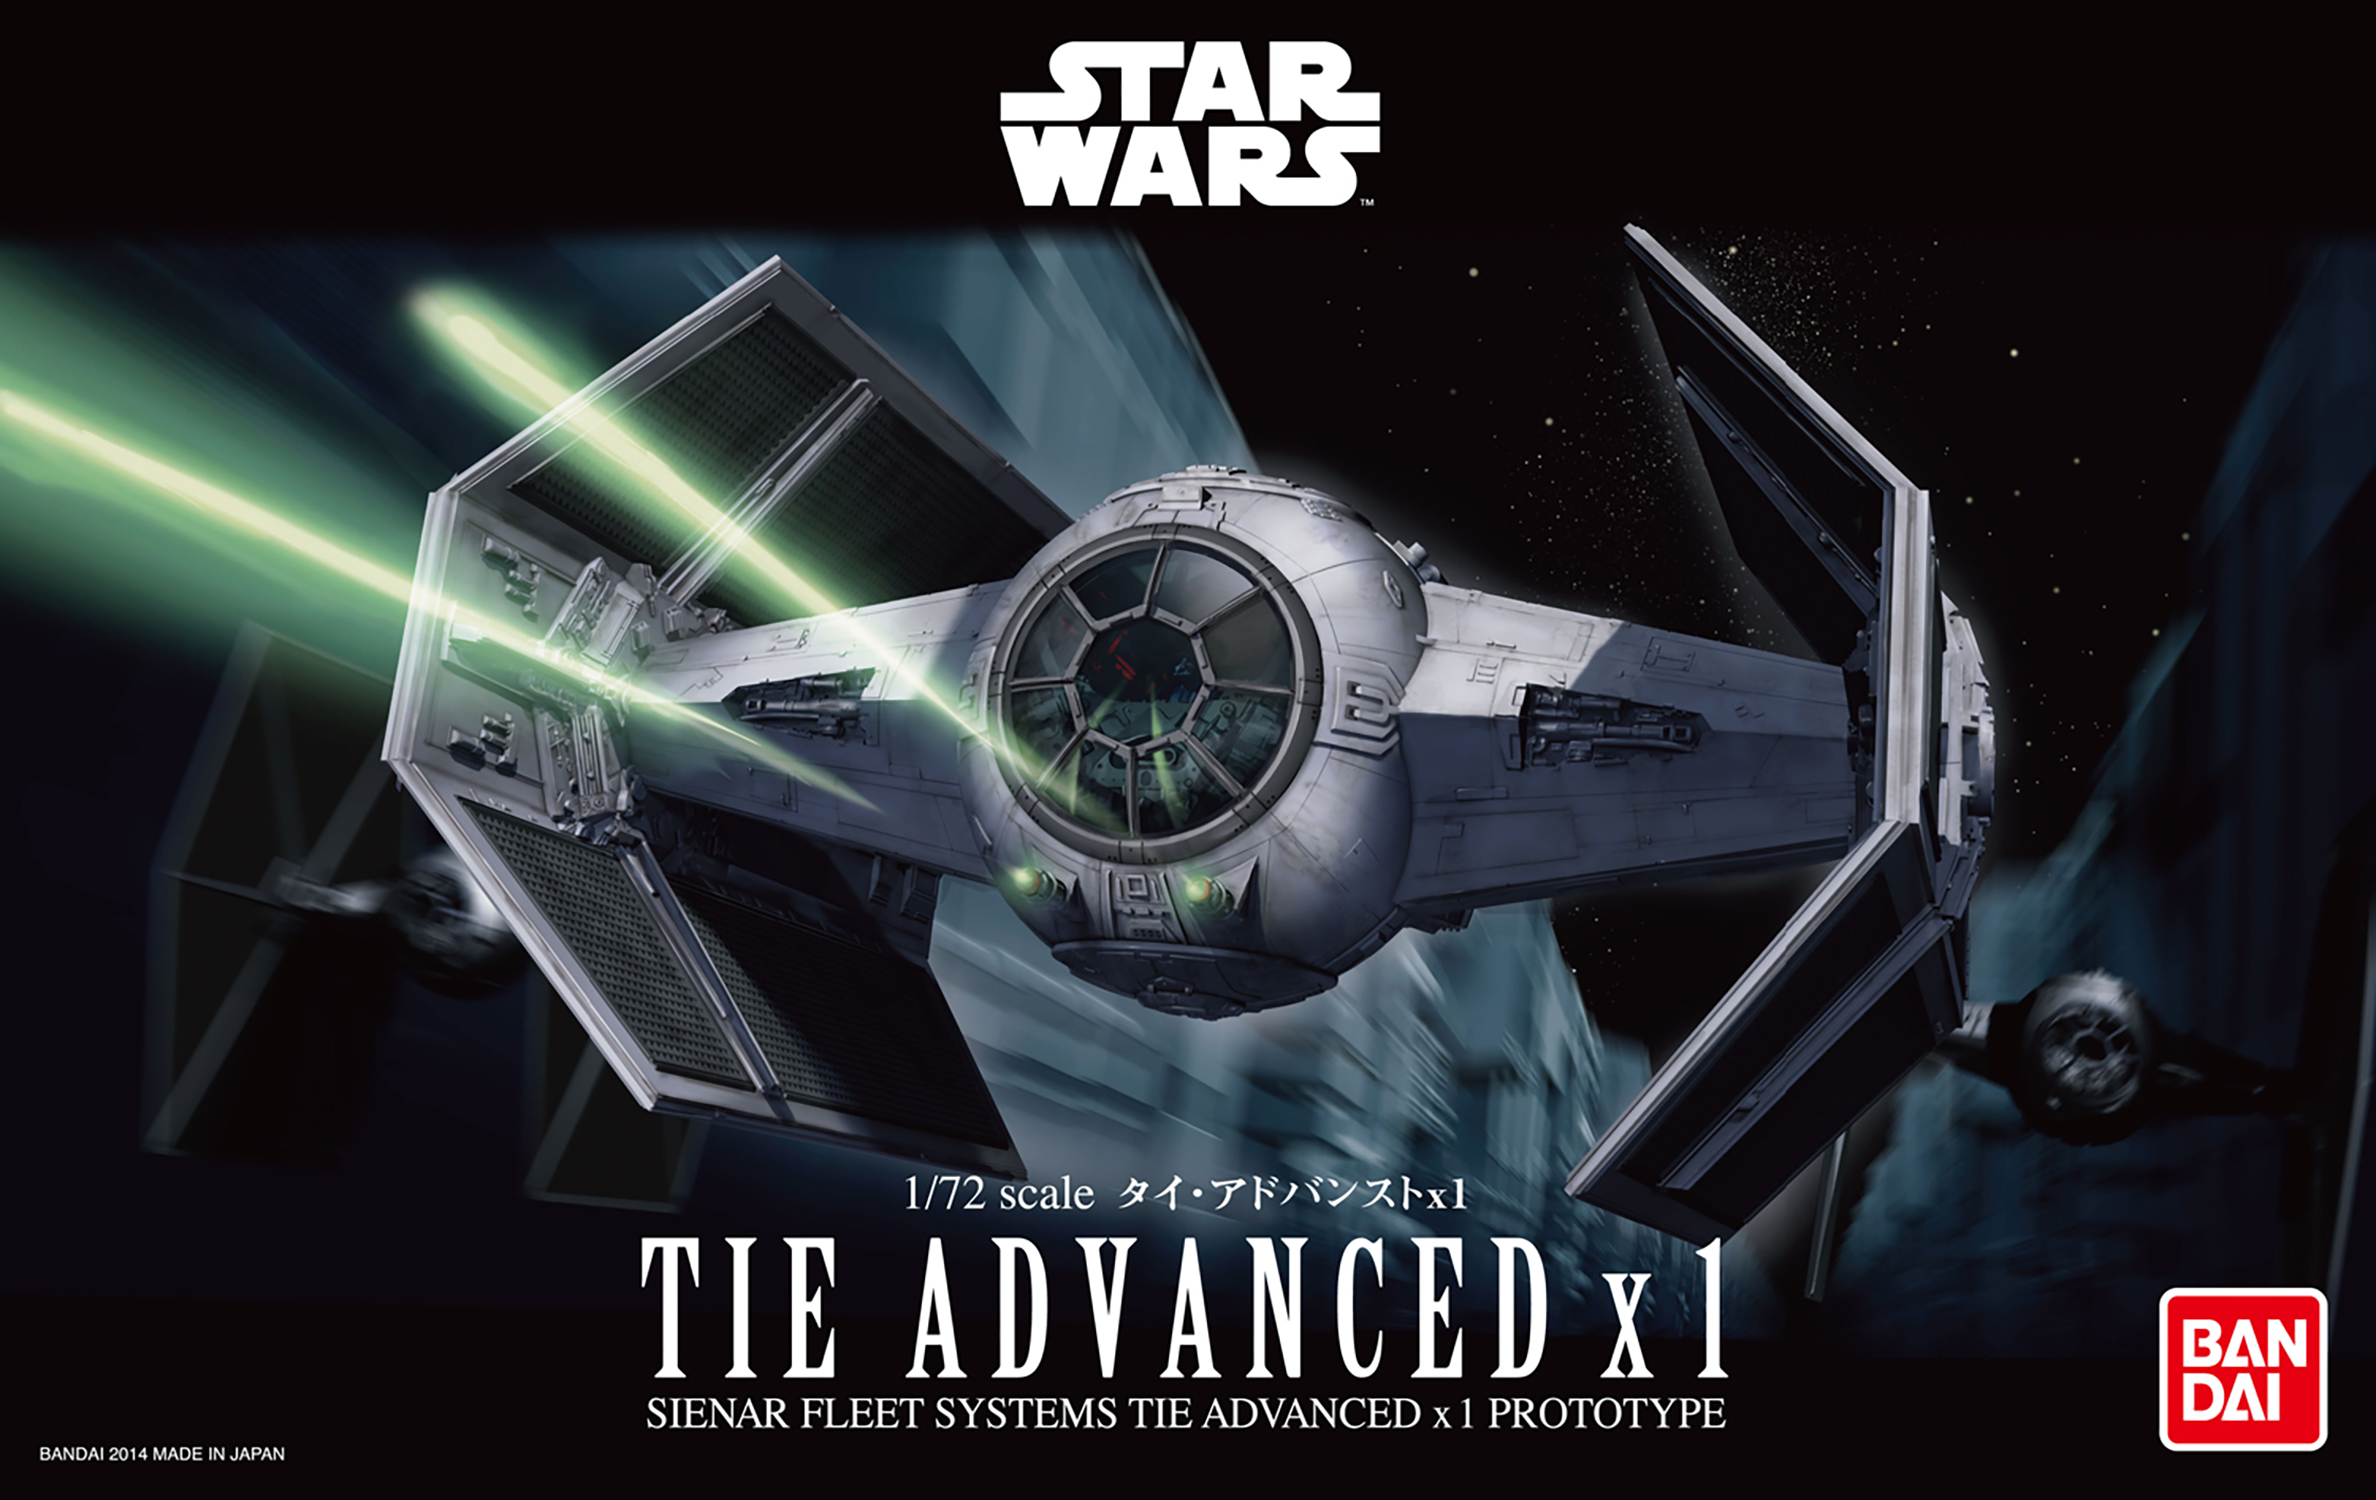 Star Wars Tie Advanced X1 1/72 Model Kit